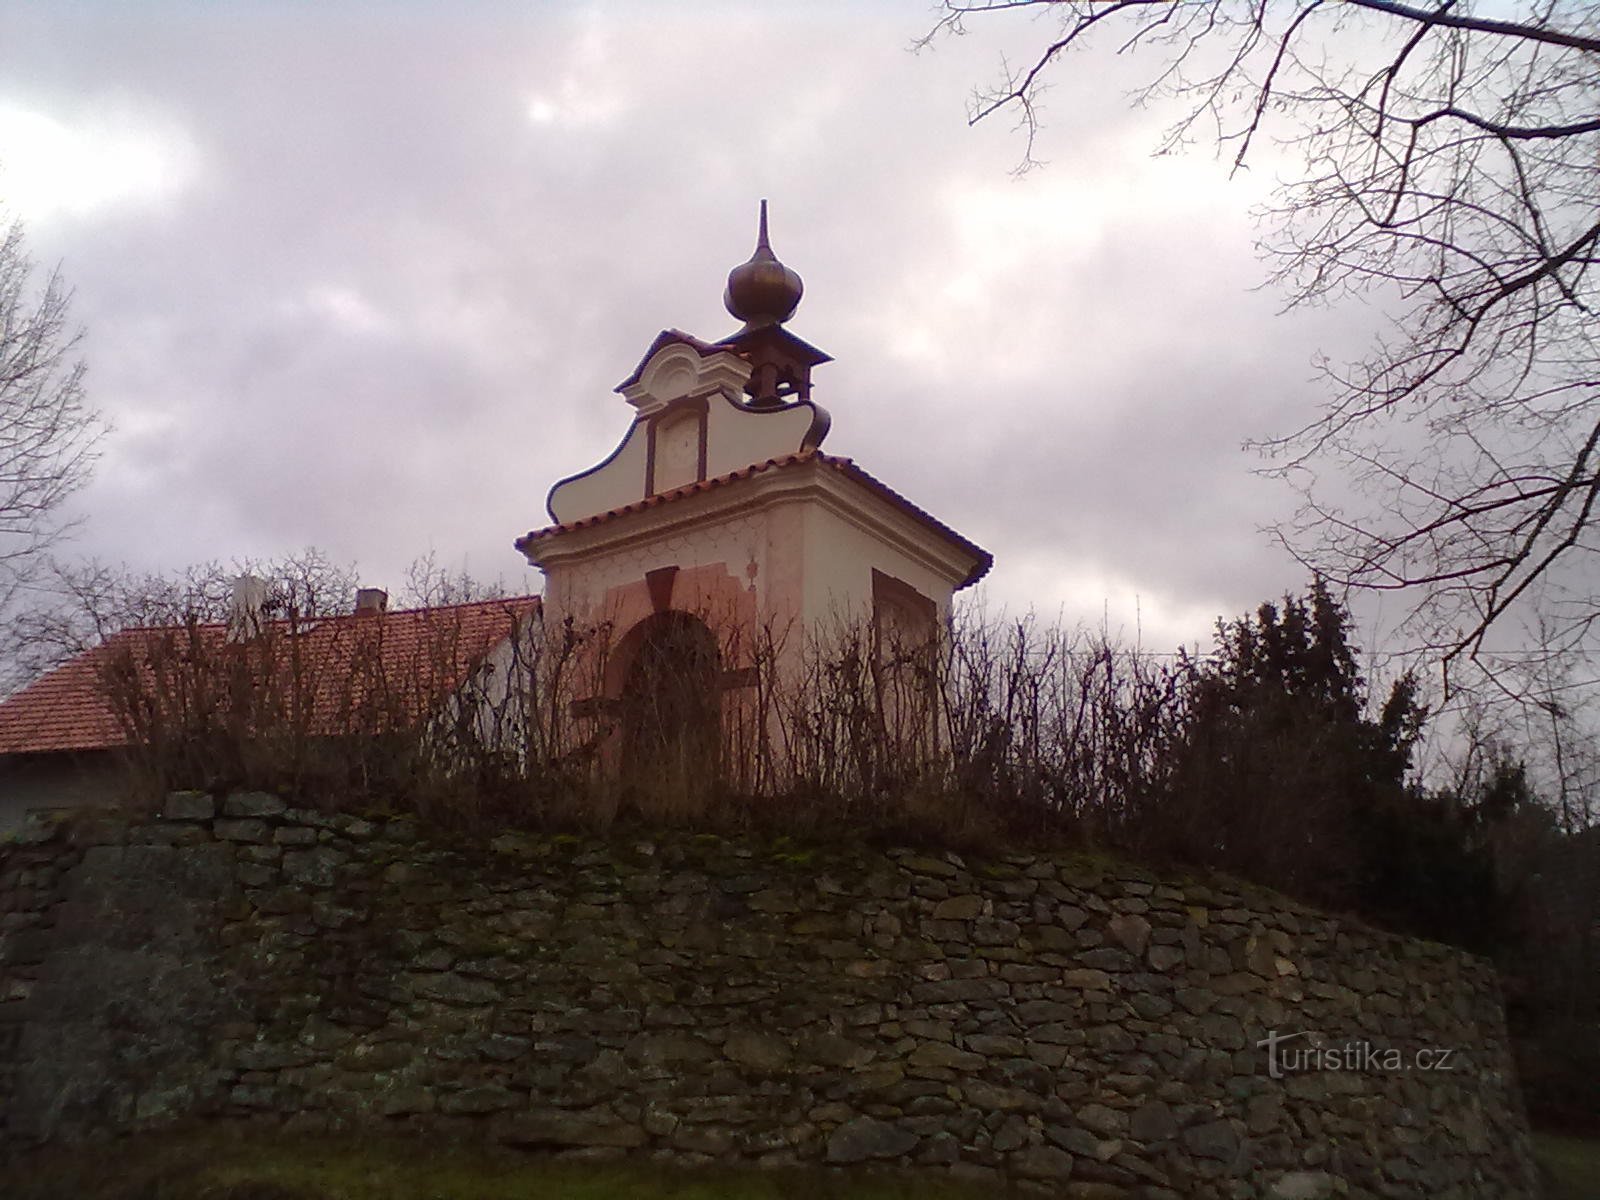 Începutul și sfârșitul călătoriei. Capela din Jetřichovice.